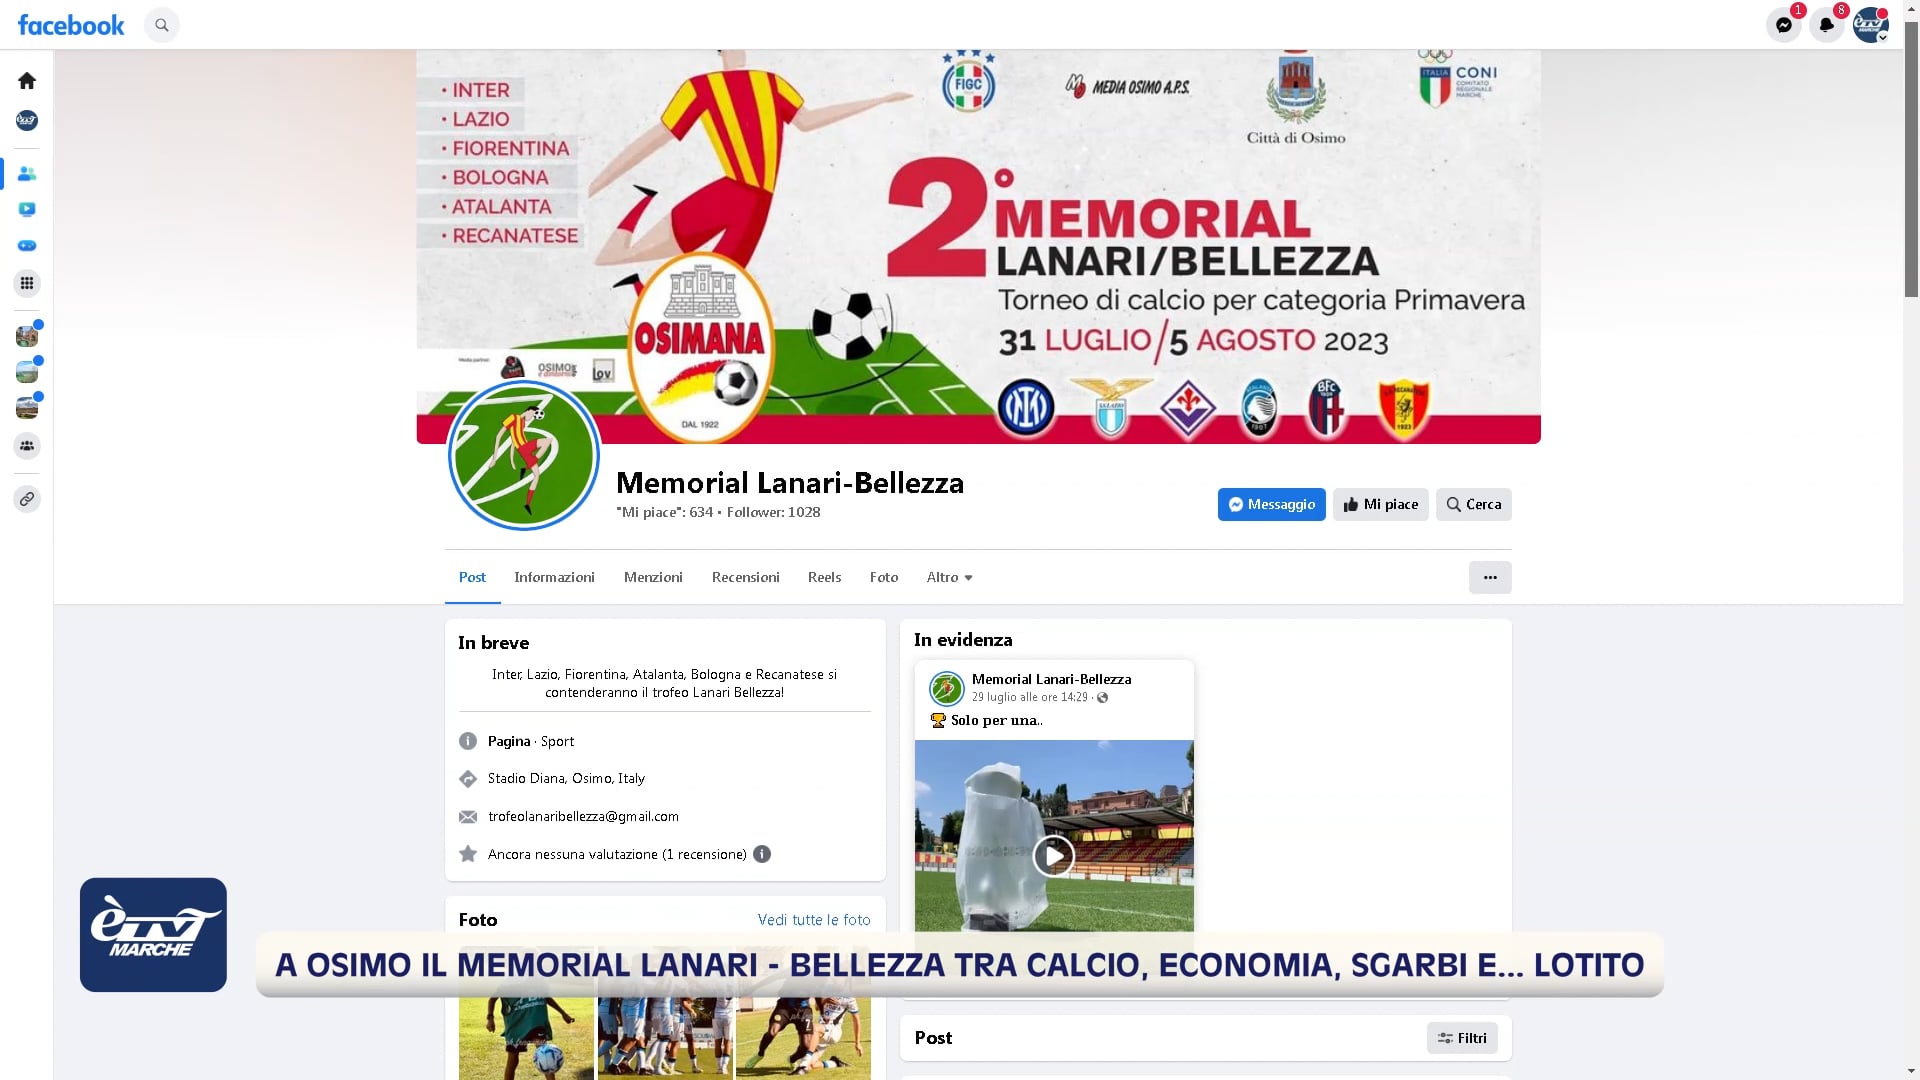 A Osimo il Memorial Lanari - Bellezza tra calcio, economia, Sgarbi e .. Lotito